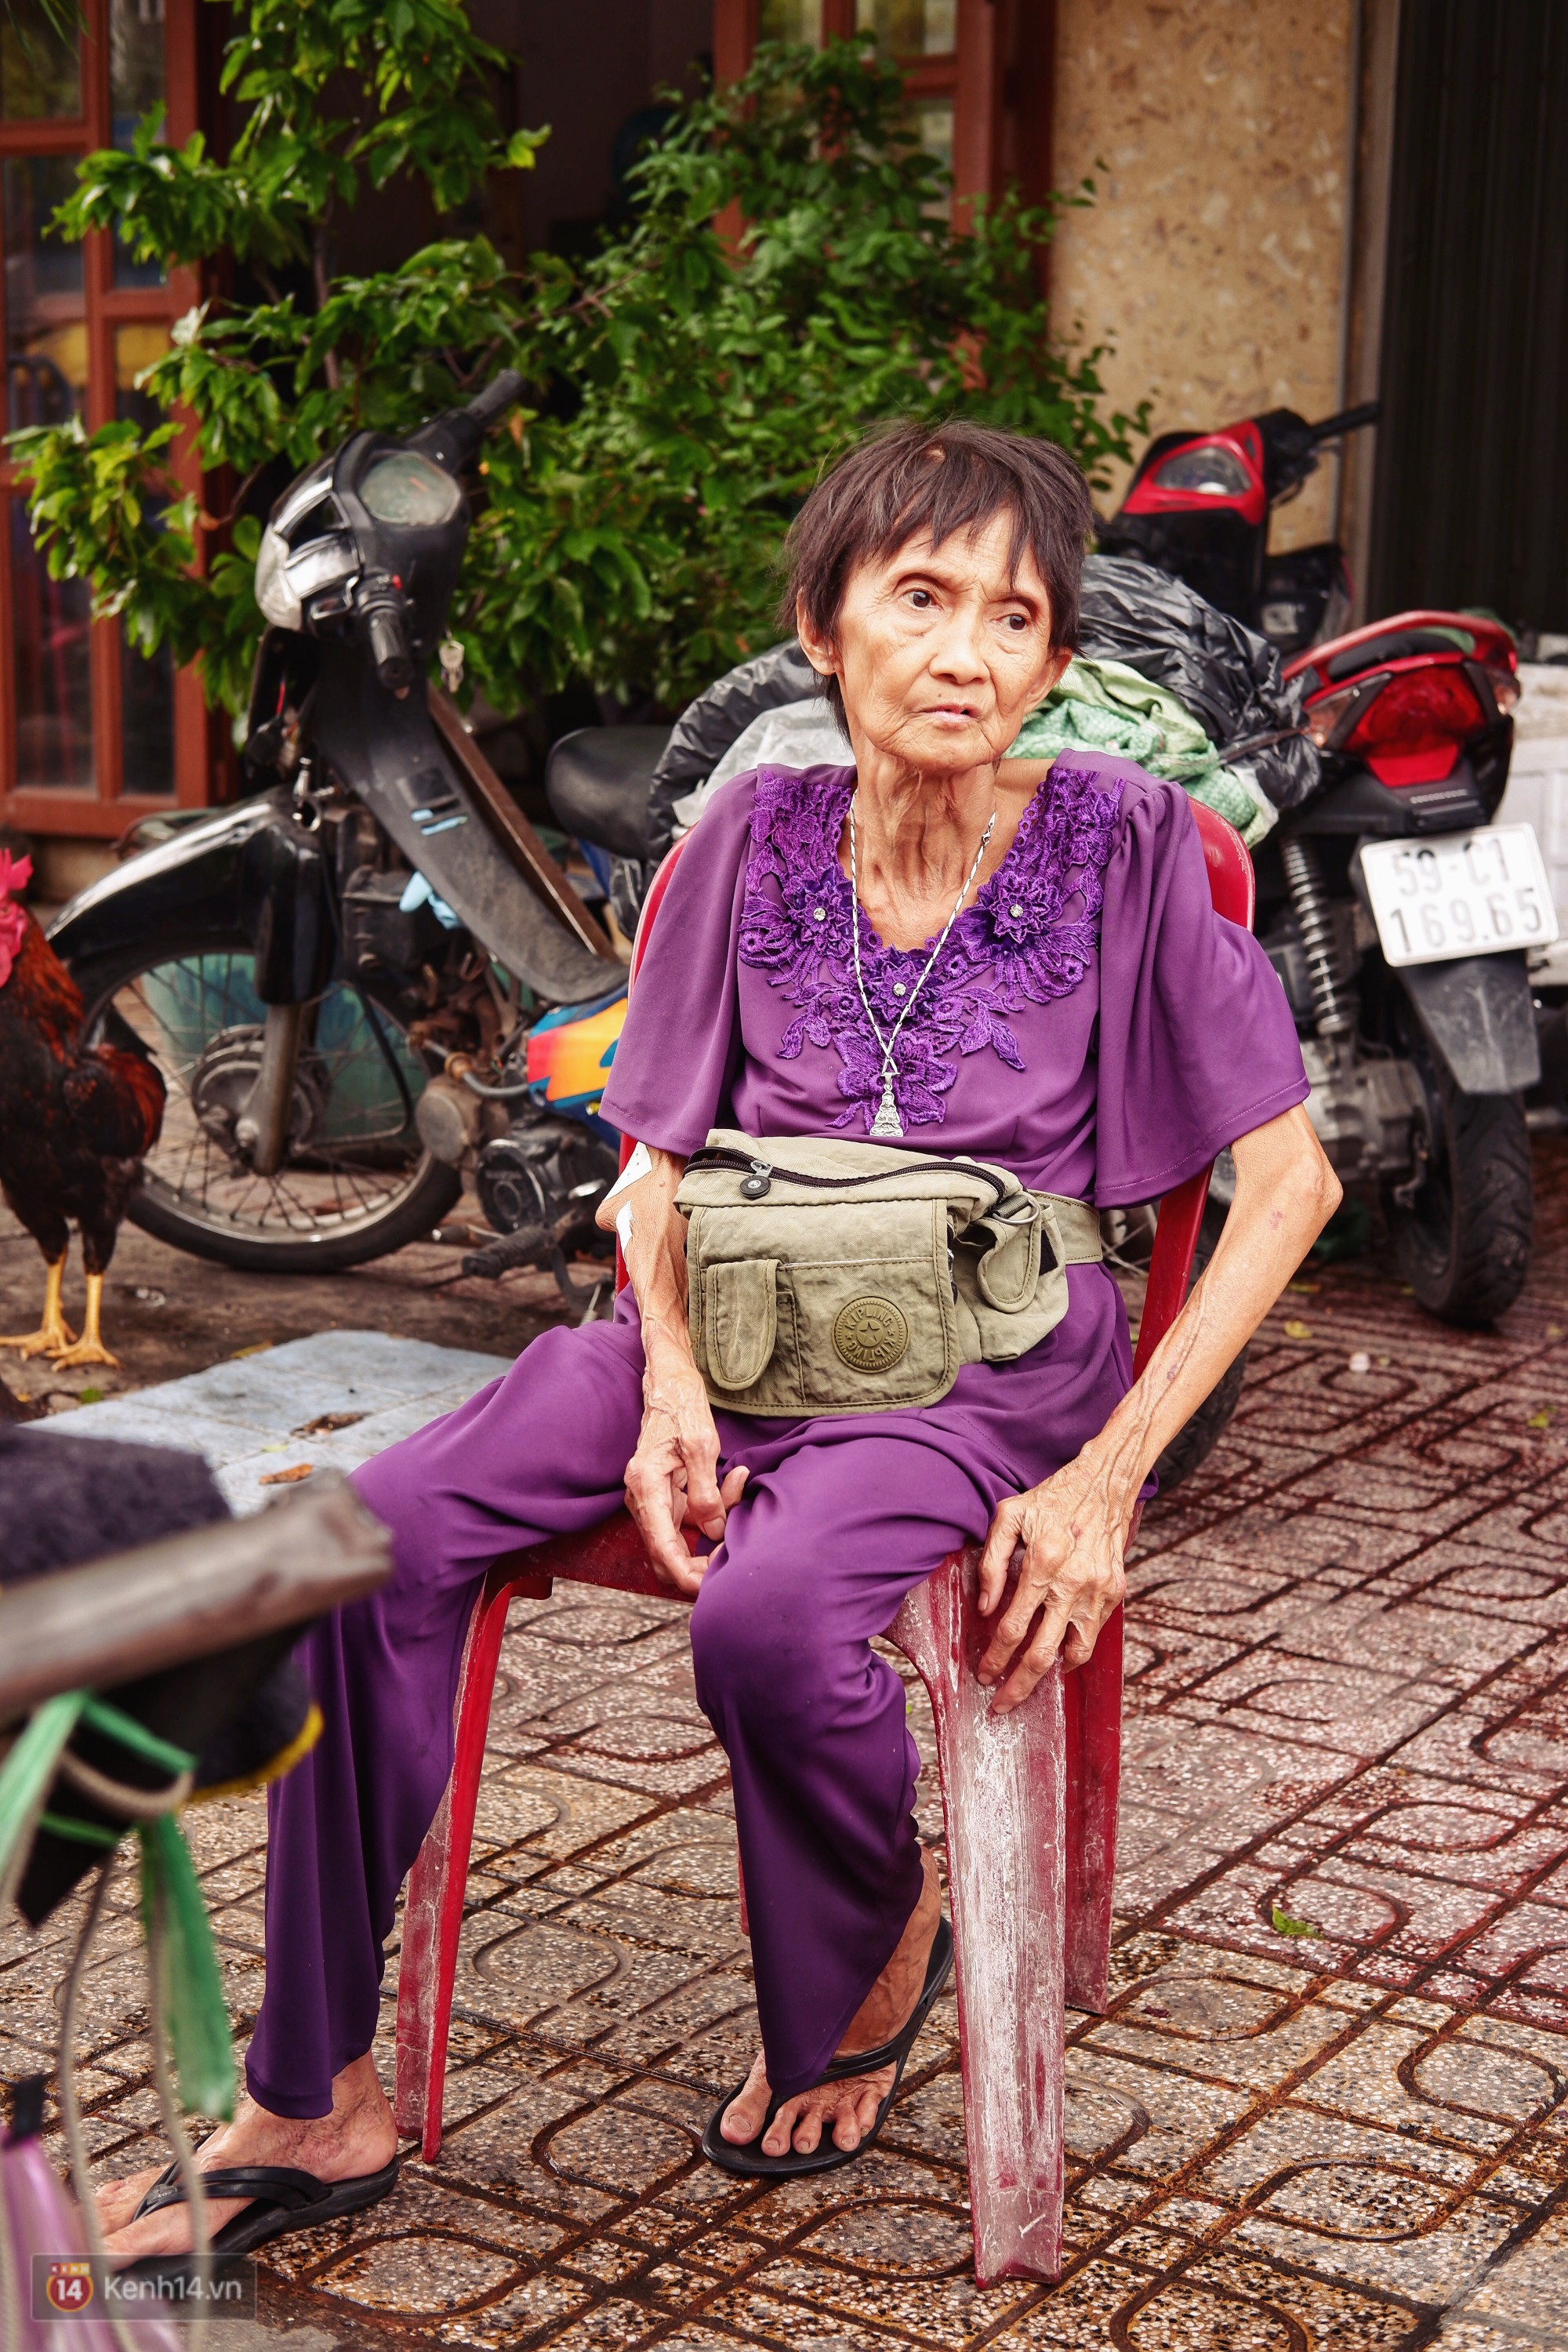 Bà cụ gầy gò với cân nặng chỉ 25kg ở Sài Gòn, 30 năm tần tảo bên gánh chè nuôi gia đình - Ảnh 5.